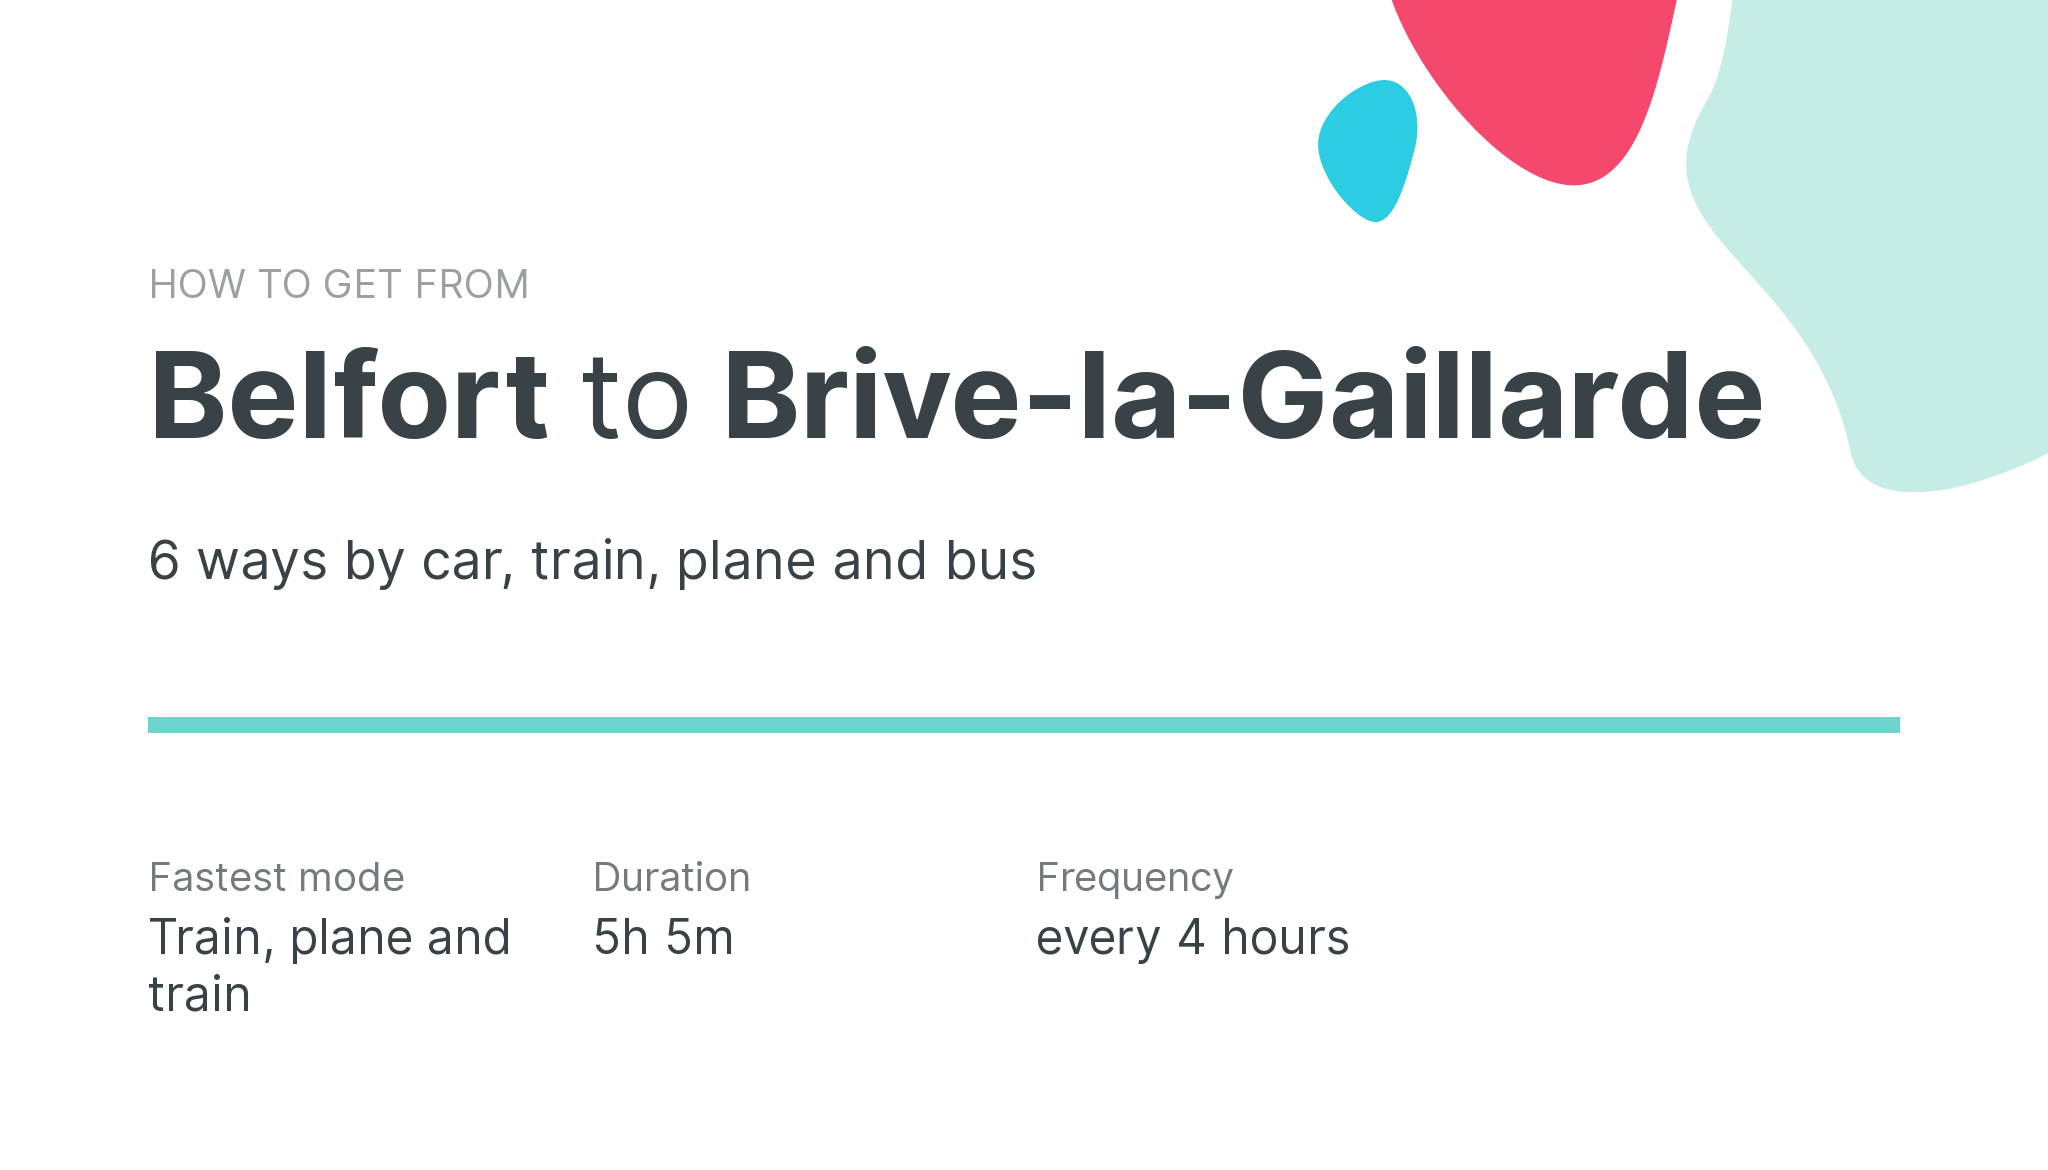 How do I get from Belfort to Brive-la-Gaillarde